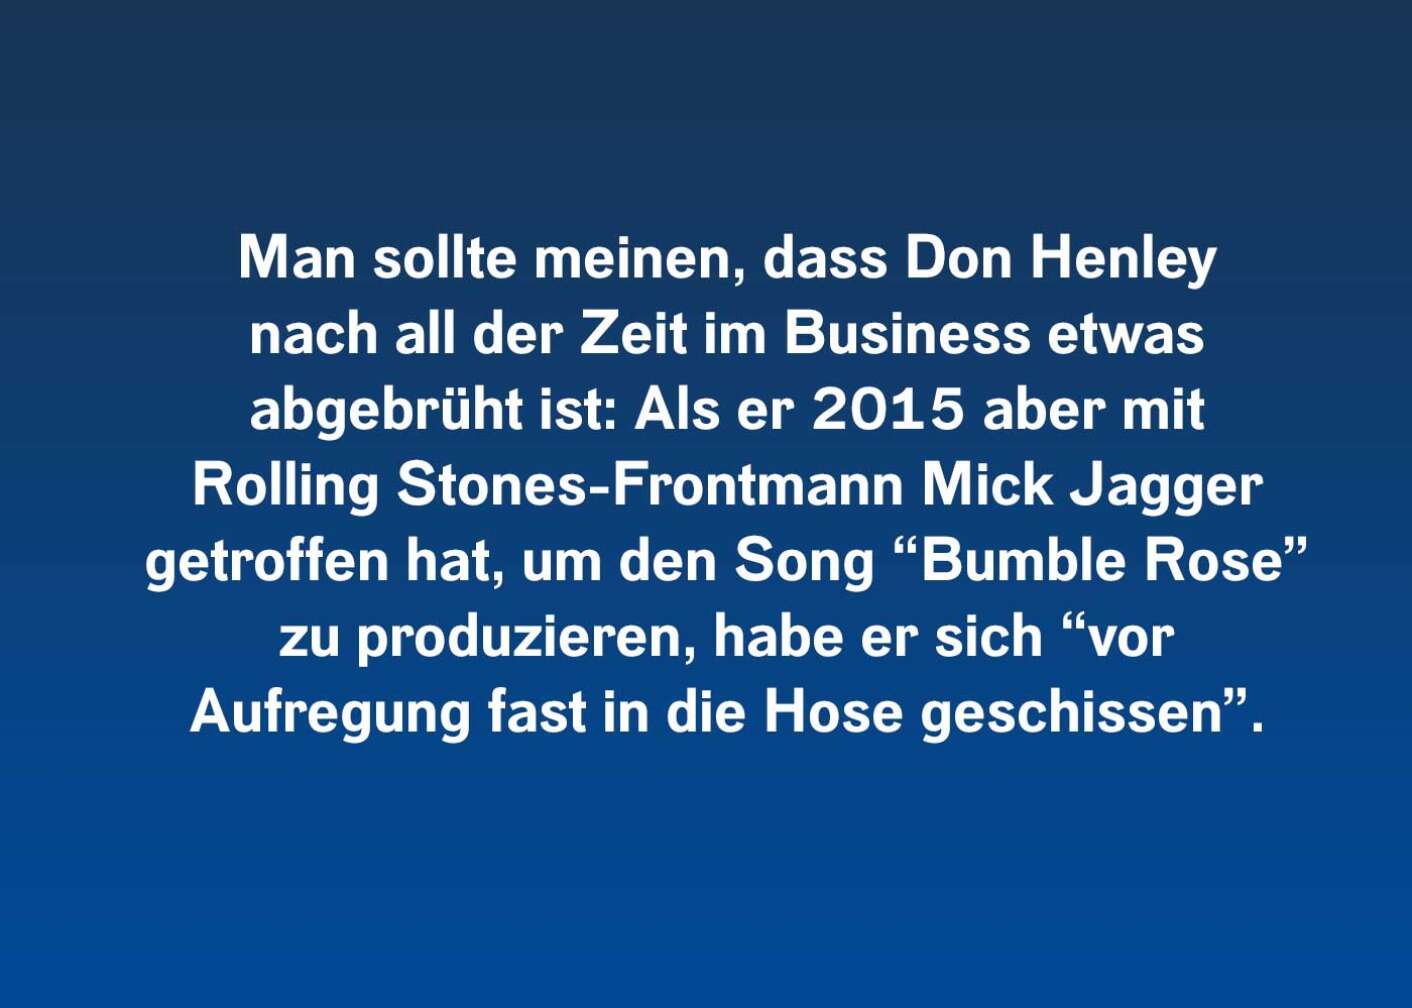 10 Fakten über Don Henley (Man sollte meinen)